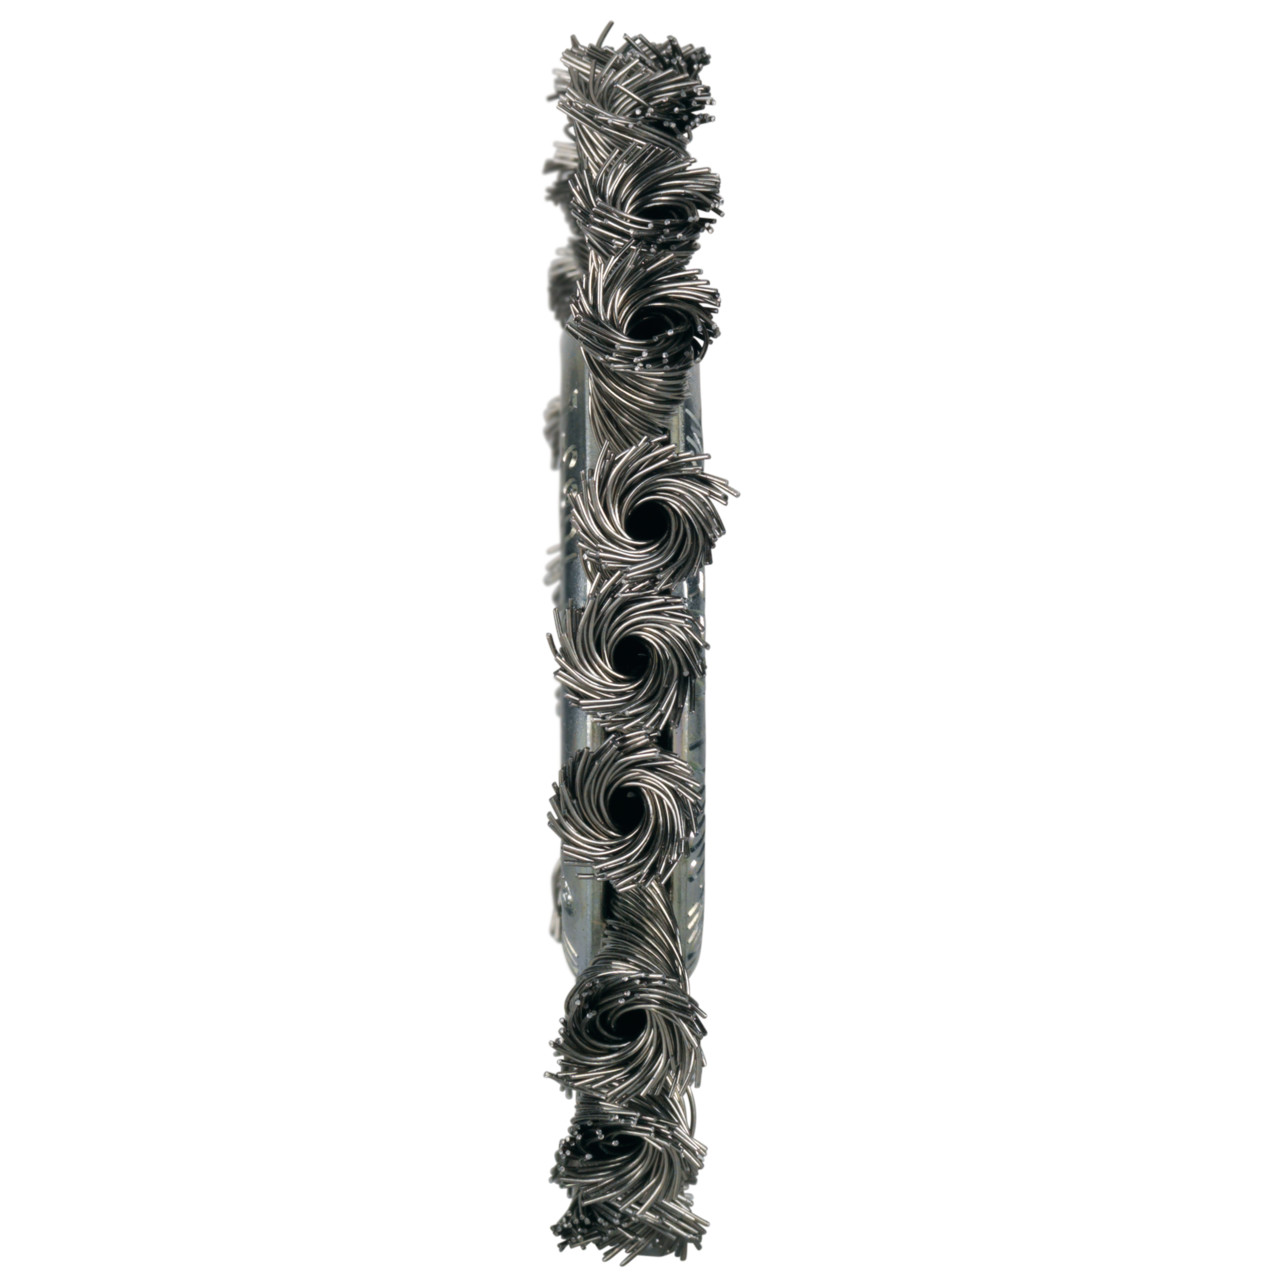 Tyrolit Cepillos redondos DxAxLxGE 115x11x23xM14 Para acero inoxidable, forma: 1RDZ - (cepillo redondo), Art. 16422